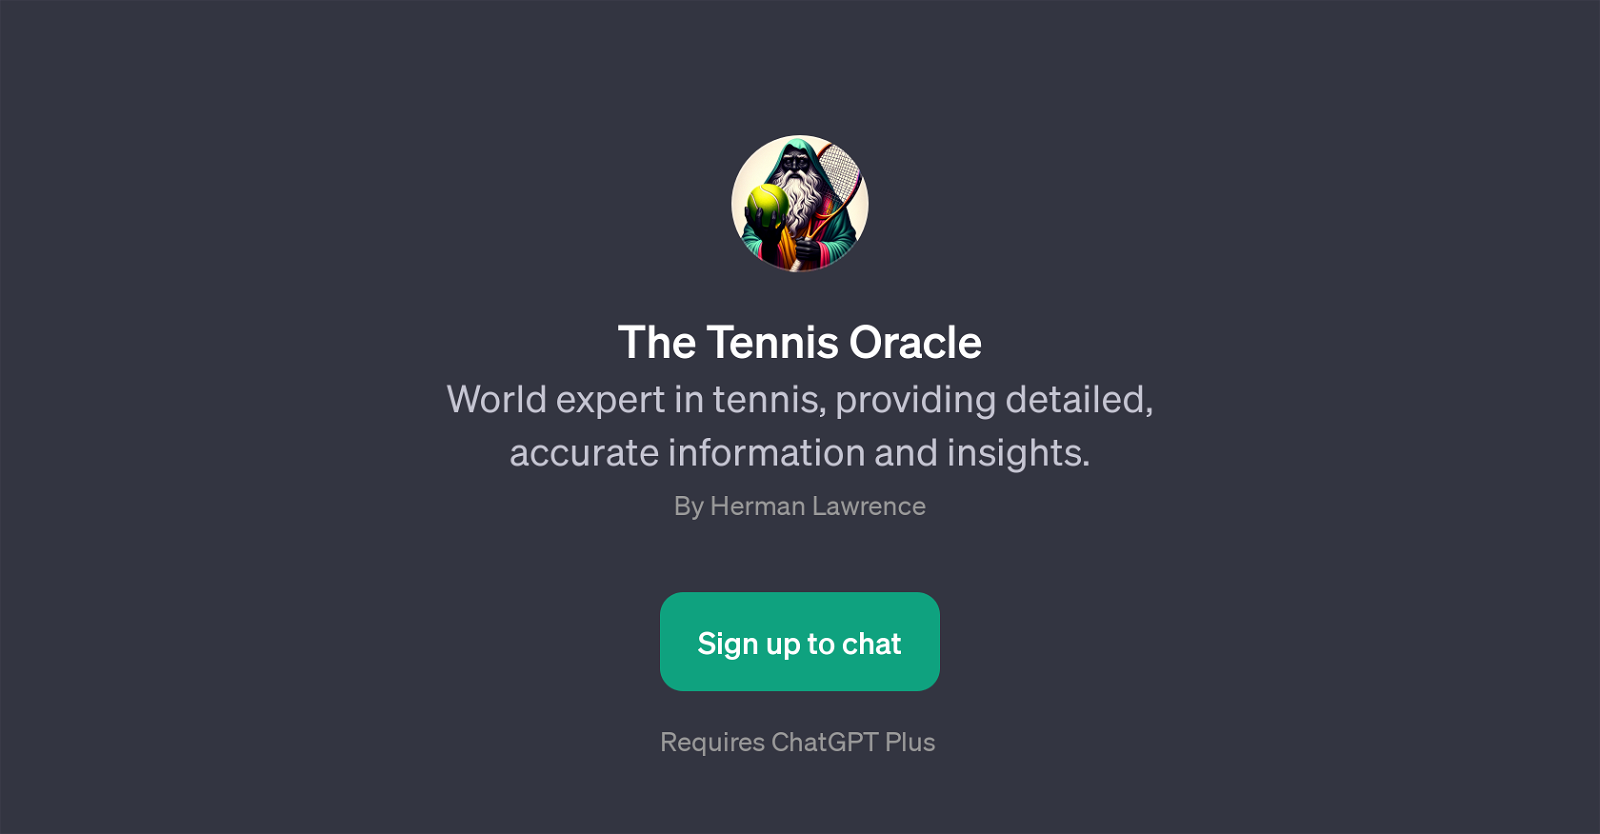 The Tennis Oracle website